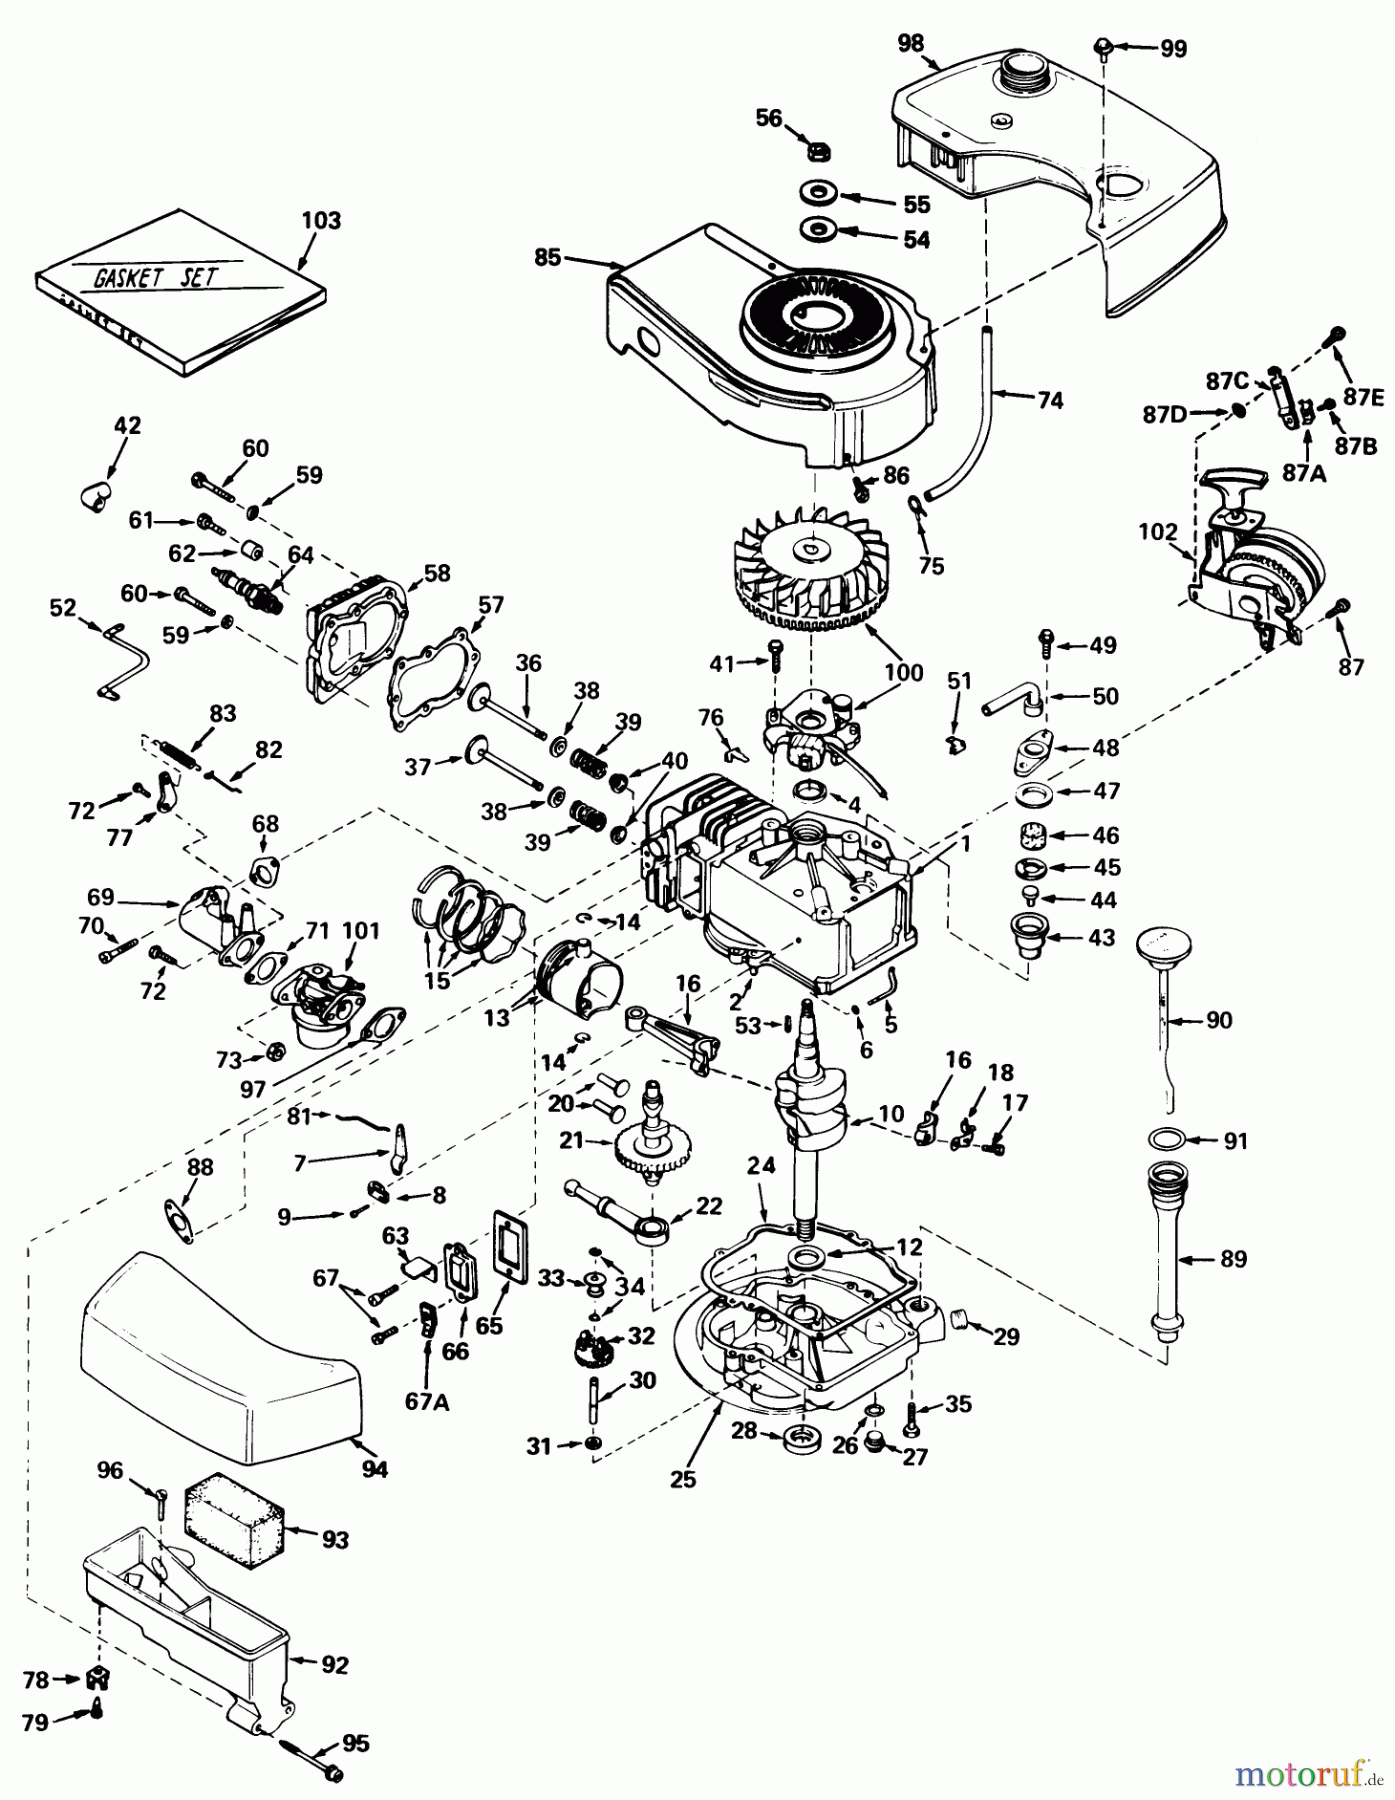  Toro Neu Mowers, Walk-Behind Seite 1 20696 - Toro Lawnmower, 1976 (6000001-7999999) ENGINE TECUMSEH MODEL NO. TNT 120-12003